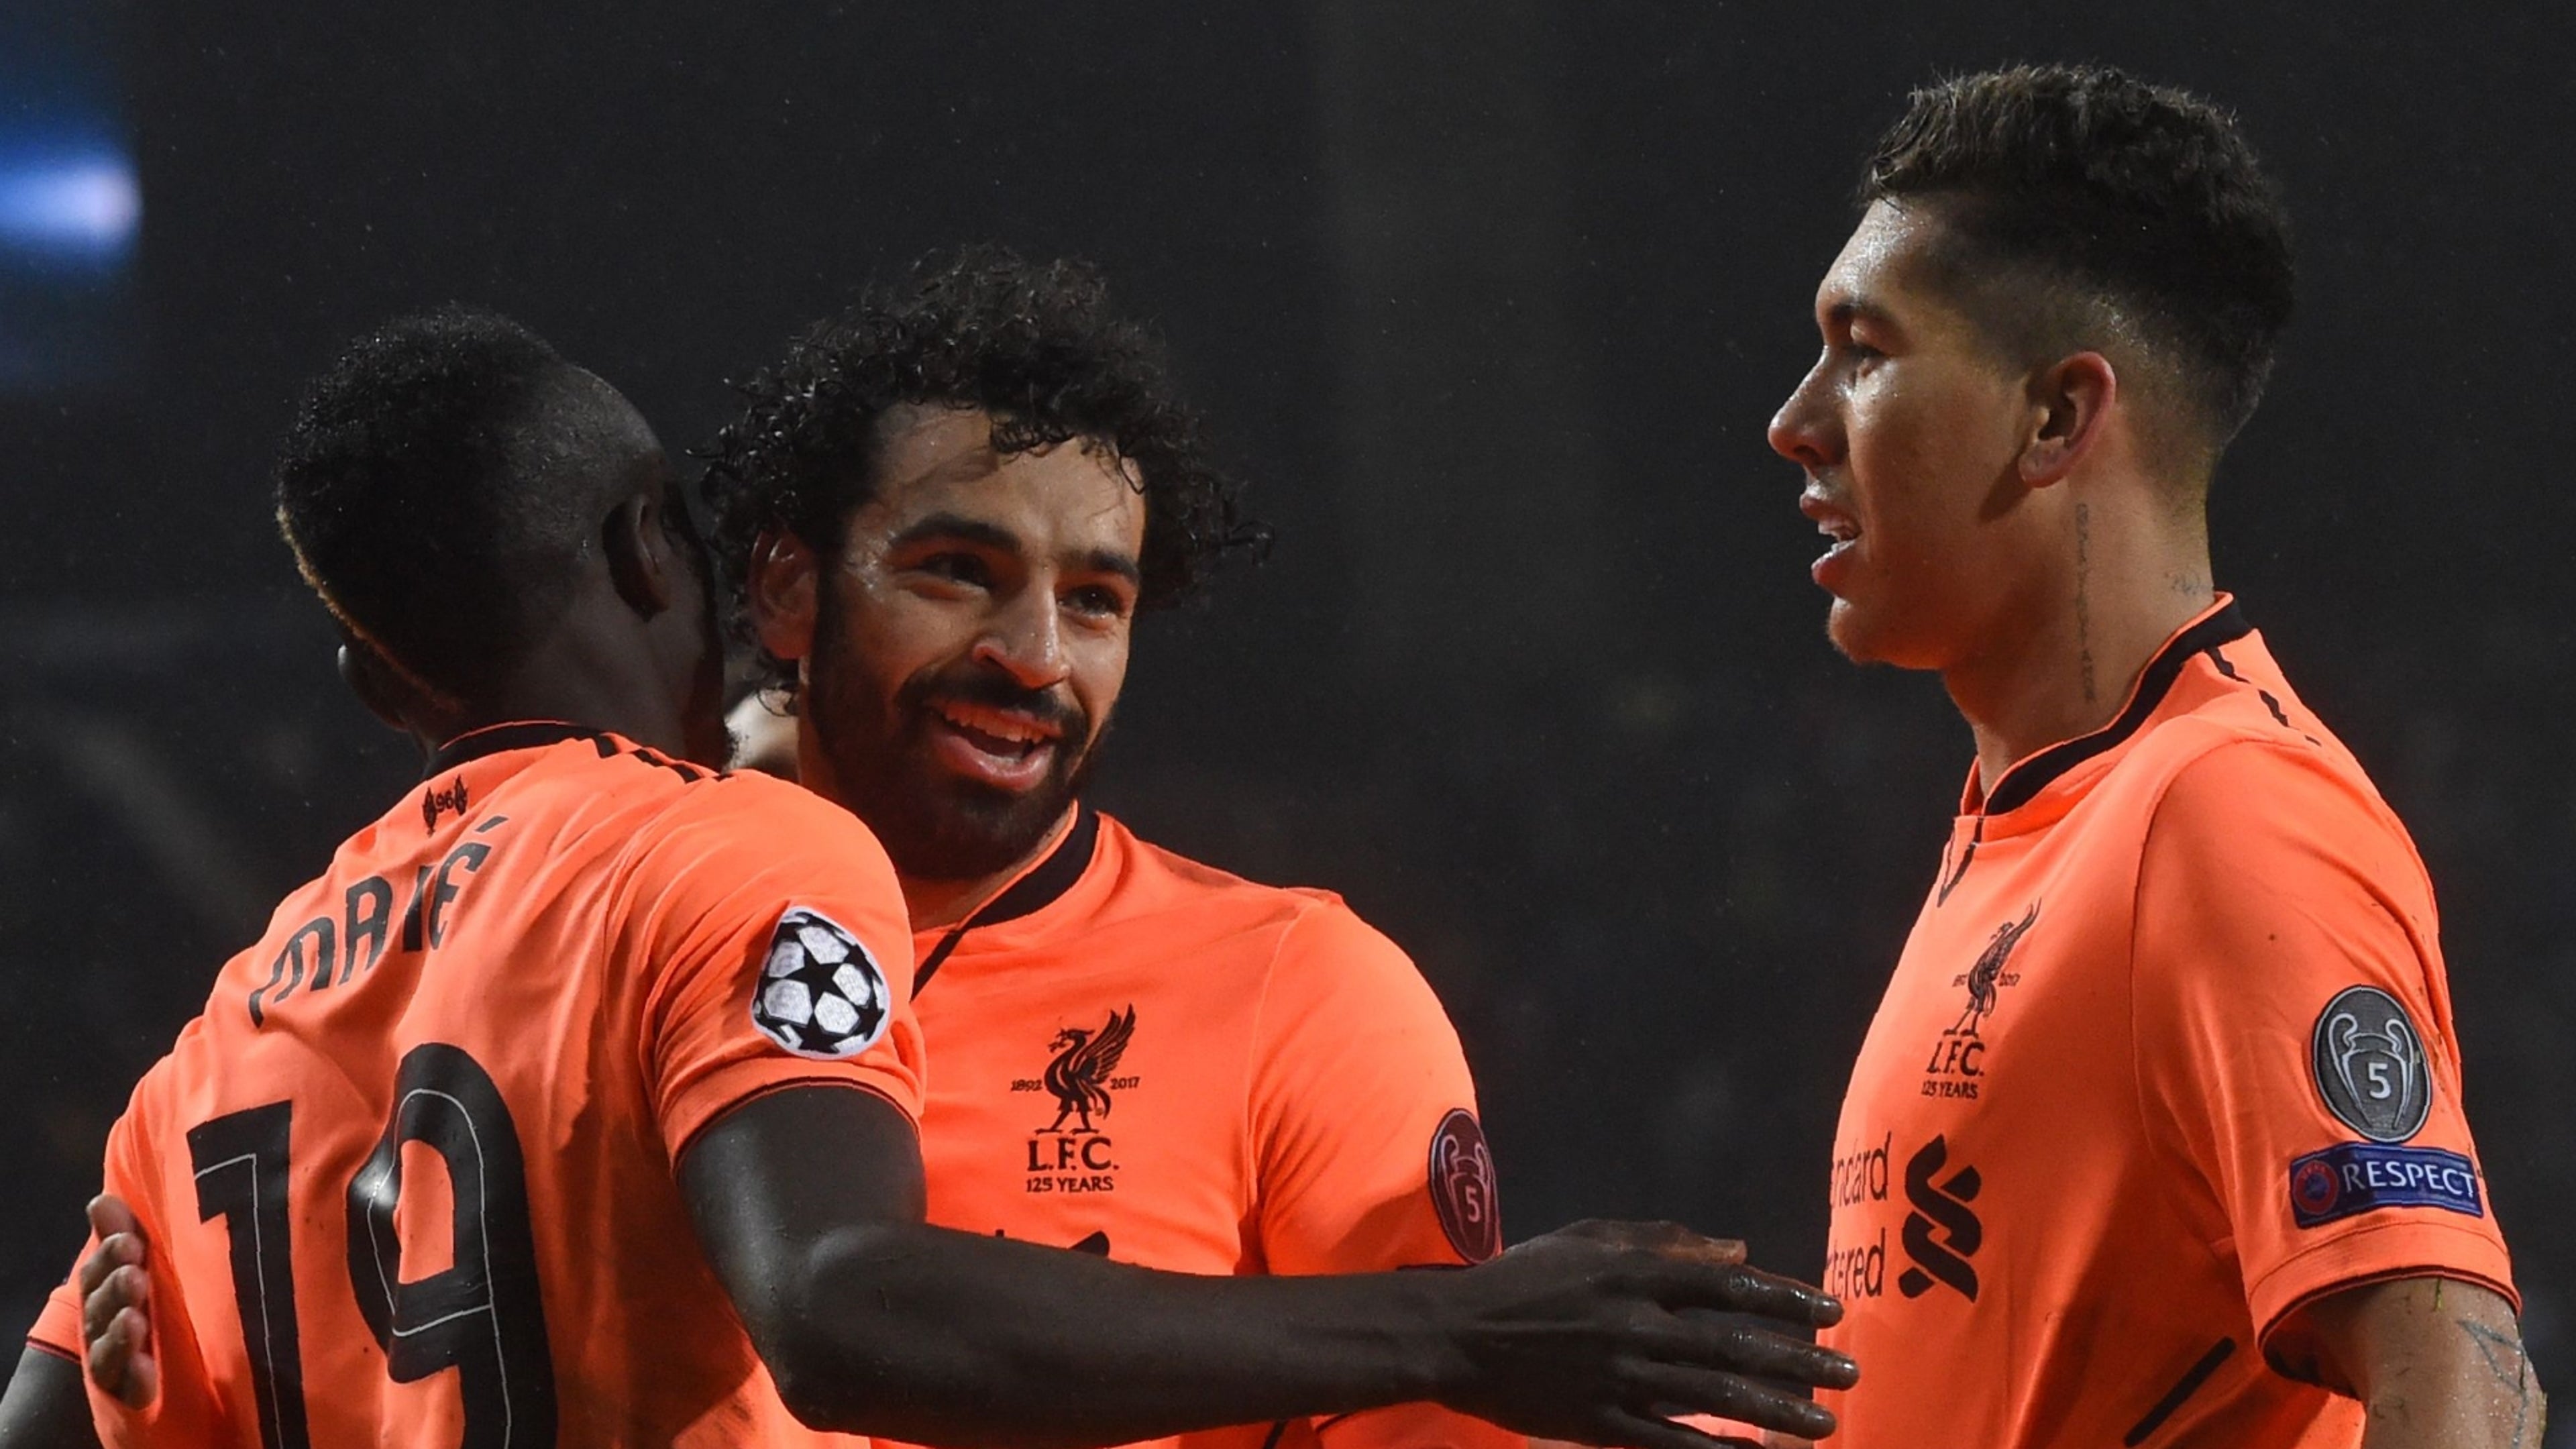 Juntos, Mané, Firmino e Salah fizeram mais gols do que a Roma